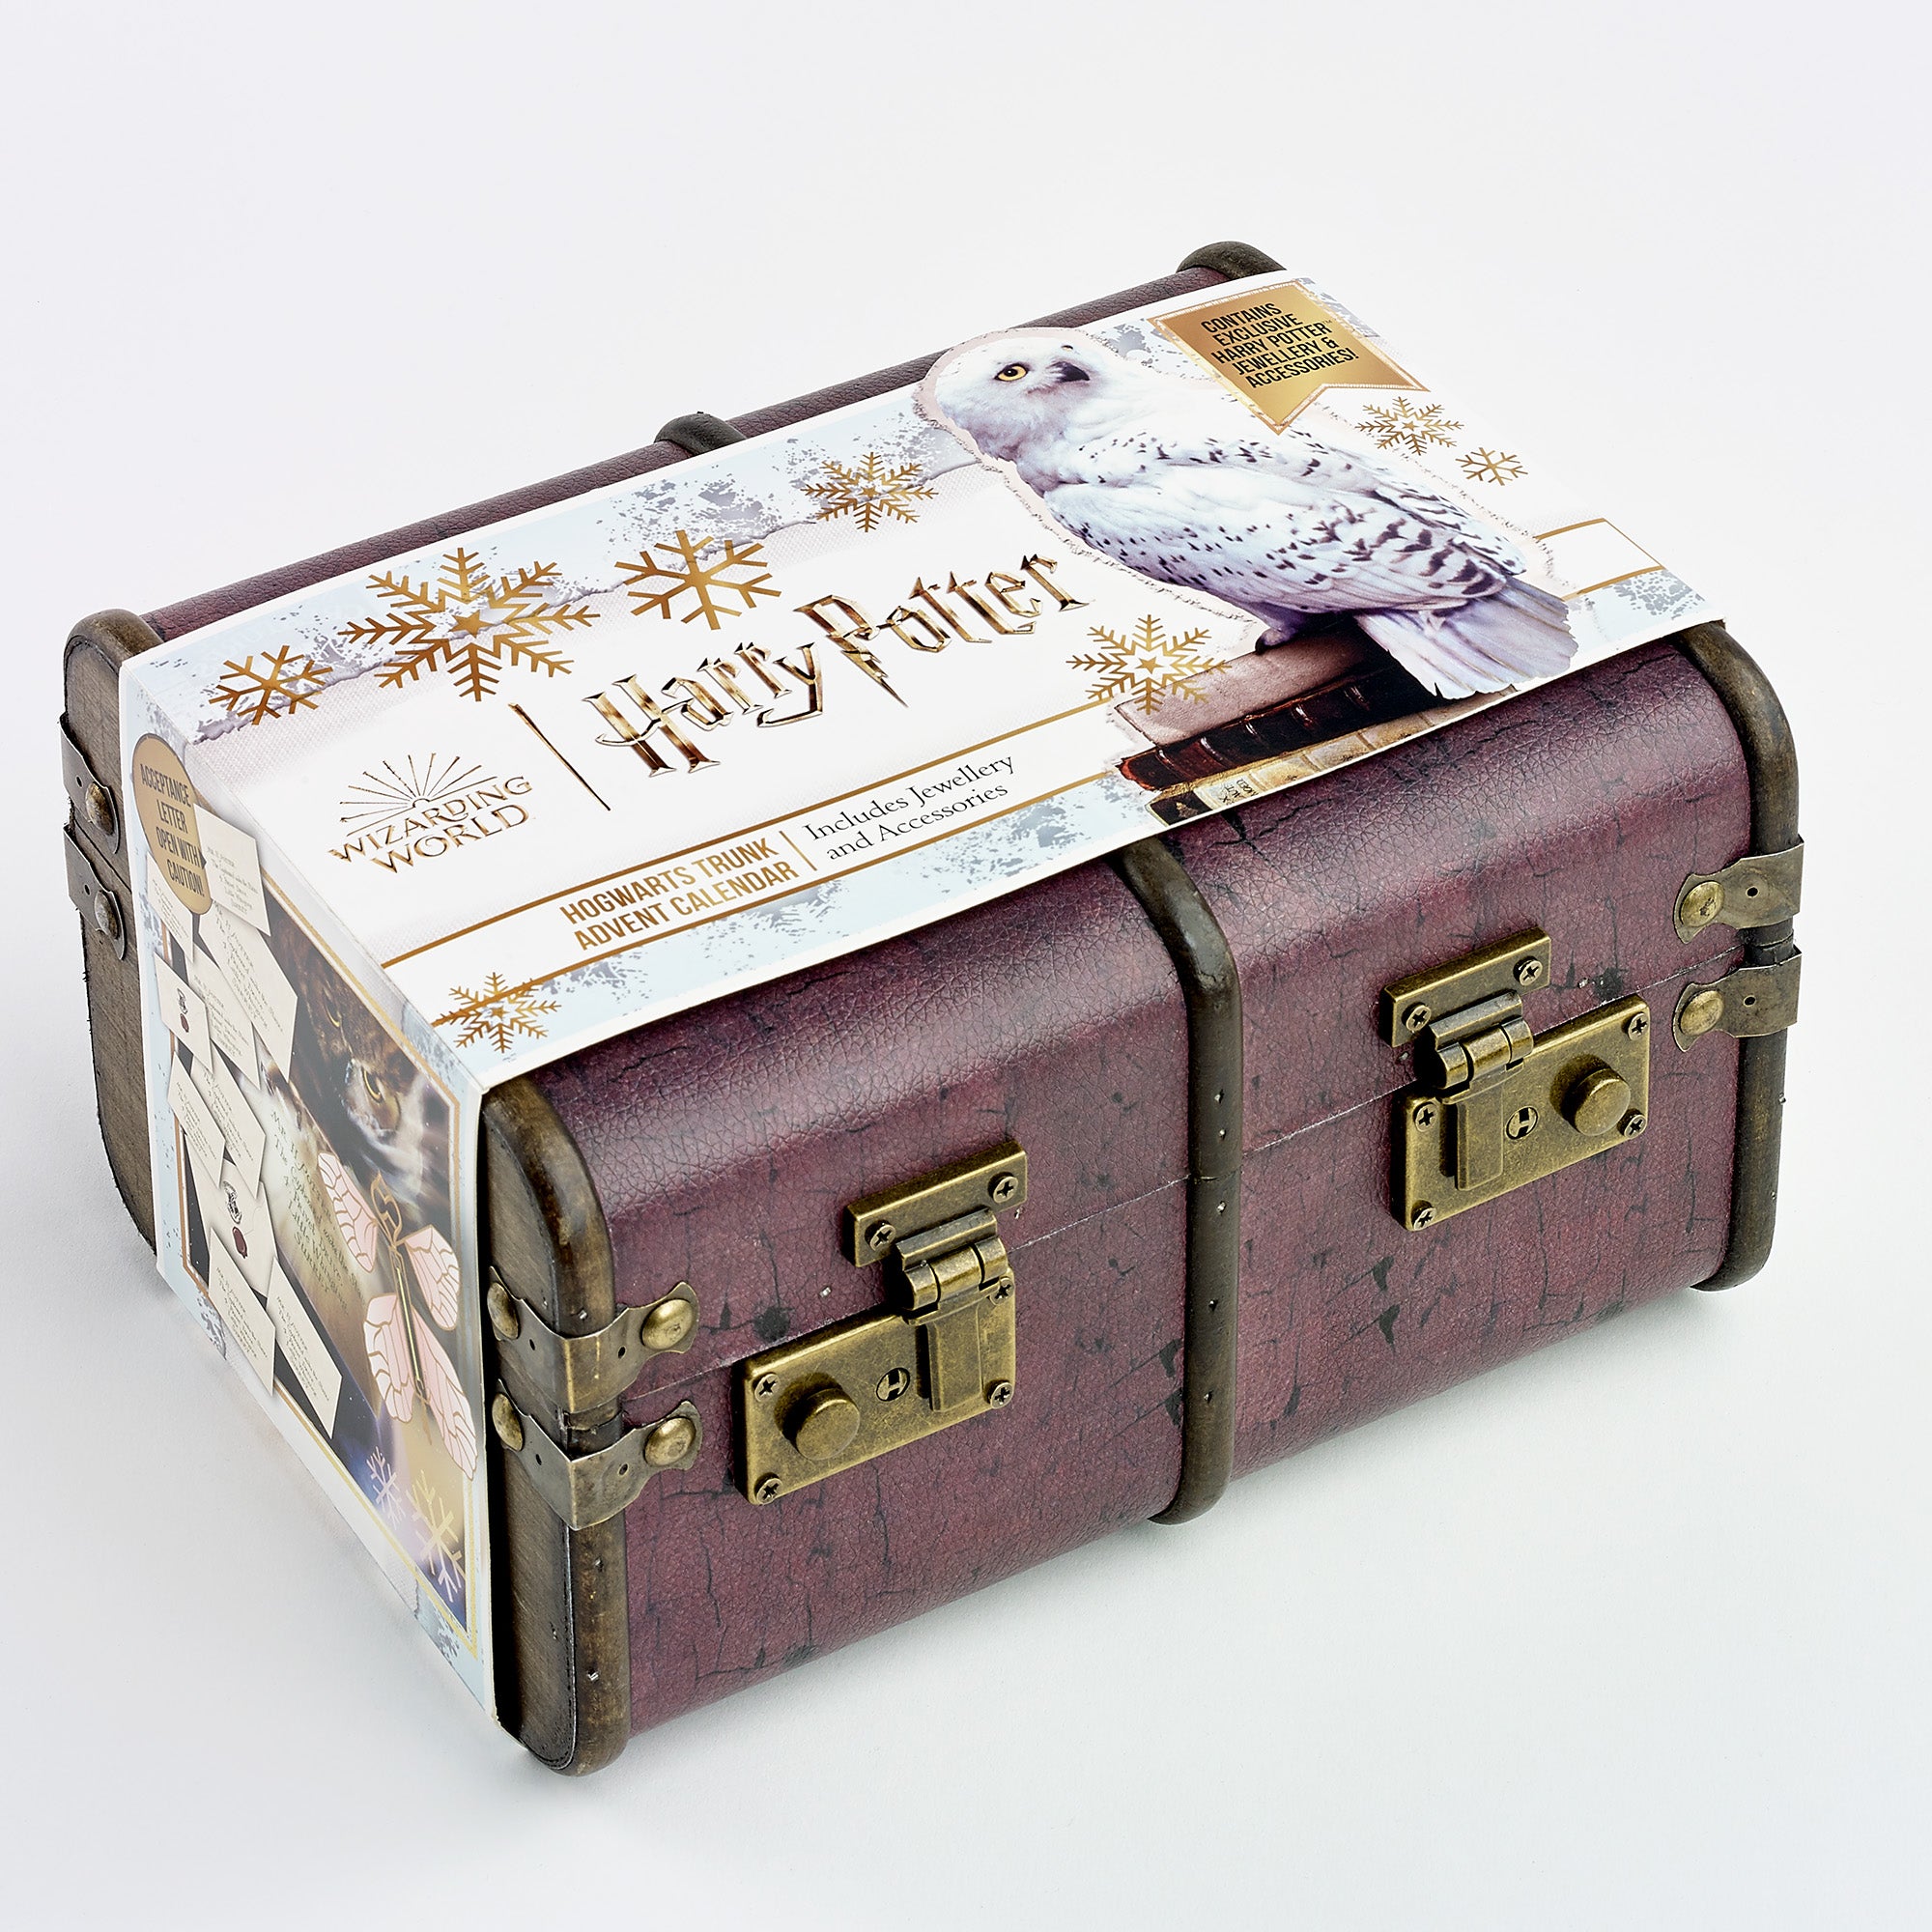 Calendrier de l’Avent Harry Potter Potions - Produit sous licence officielle - Envoi suivi gratuit